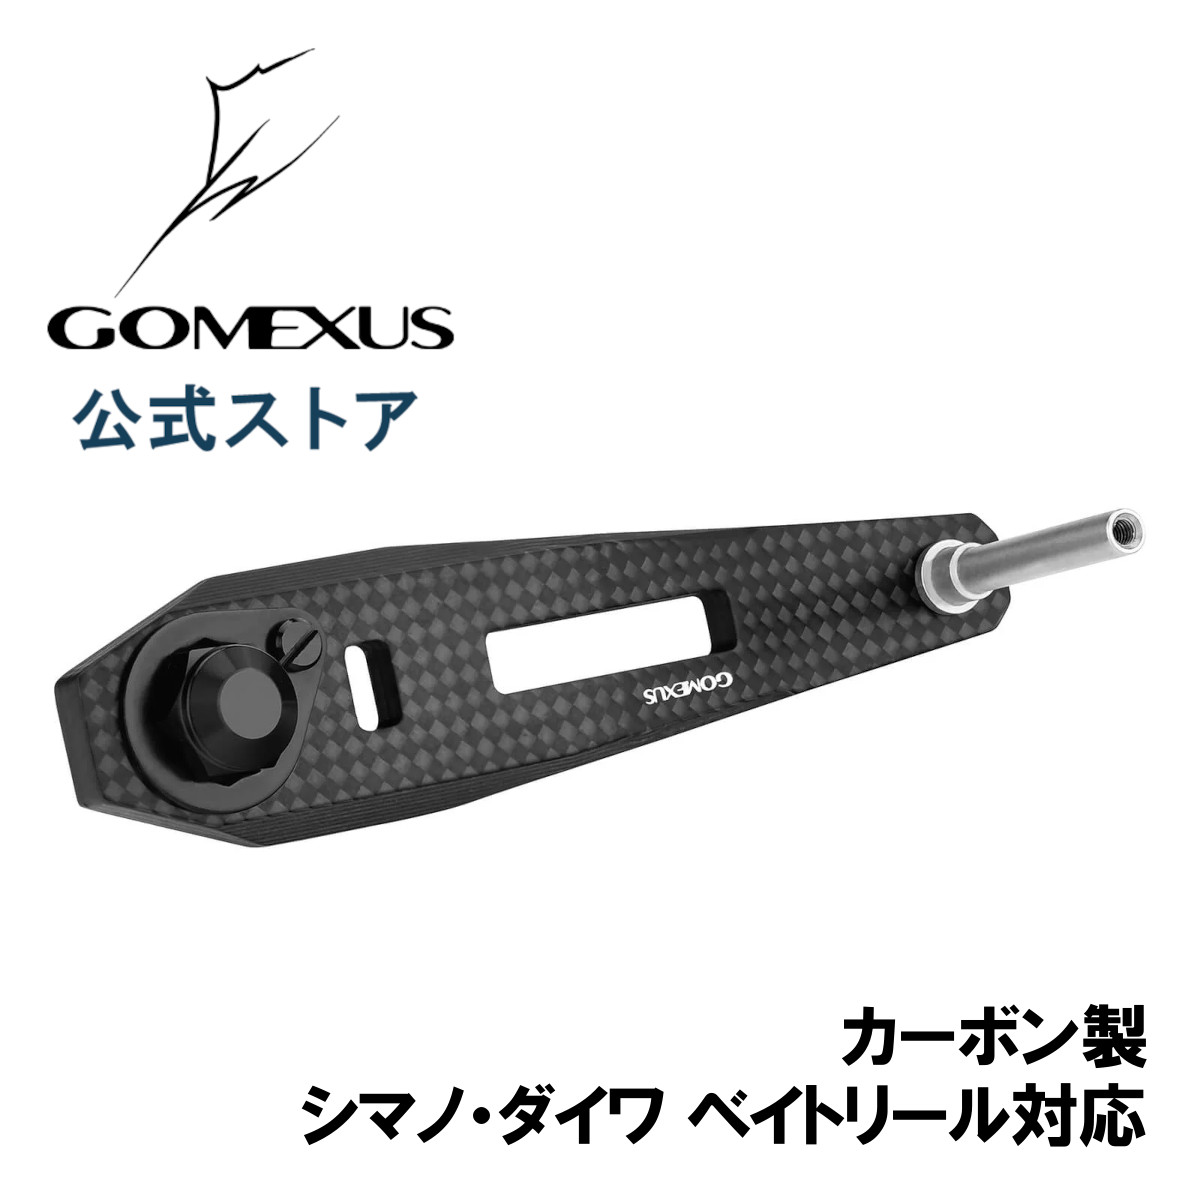 【送料無料】 ゴメクサス カーボン製 ハンドル 60-75mm リール カスタム パーツ シマノ Shimano ダイワ Daiwa 7×4mm 8x5mm穴 対応 ベイトリール シングル Gomexus